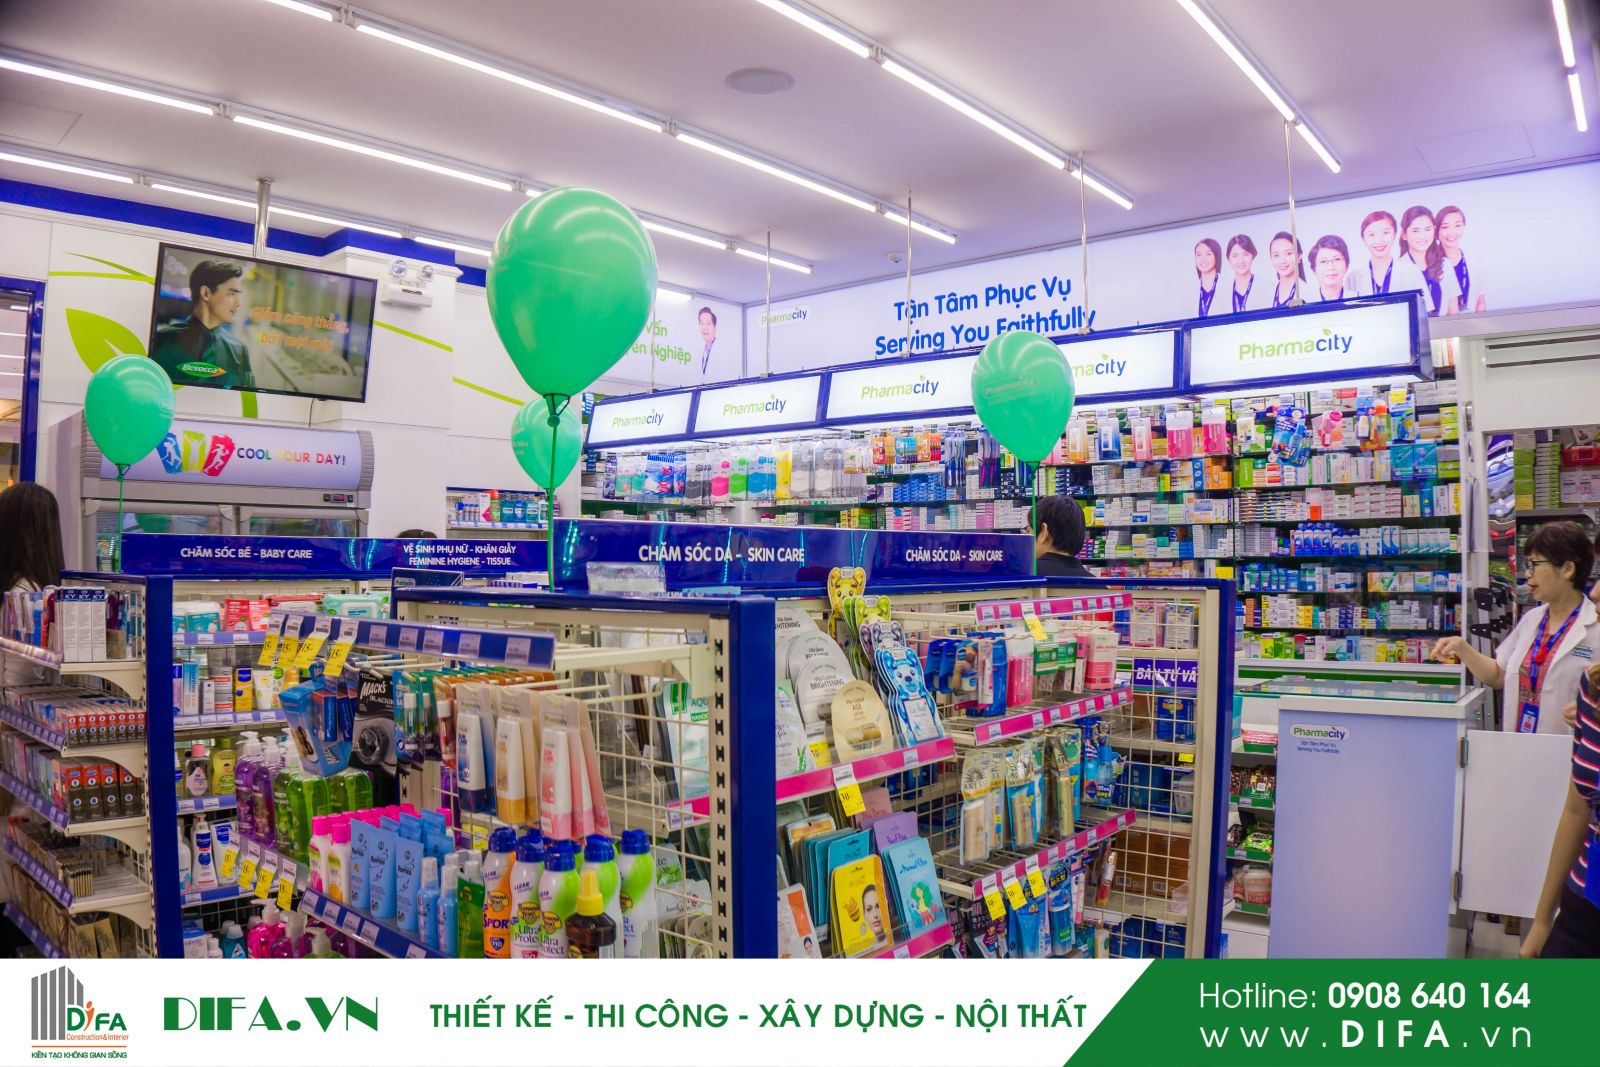 Thi công chuỗi cửa hàng đẹp - Hoàn thành nhà thuốc Pharmacity số 263 | Diệp Gia